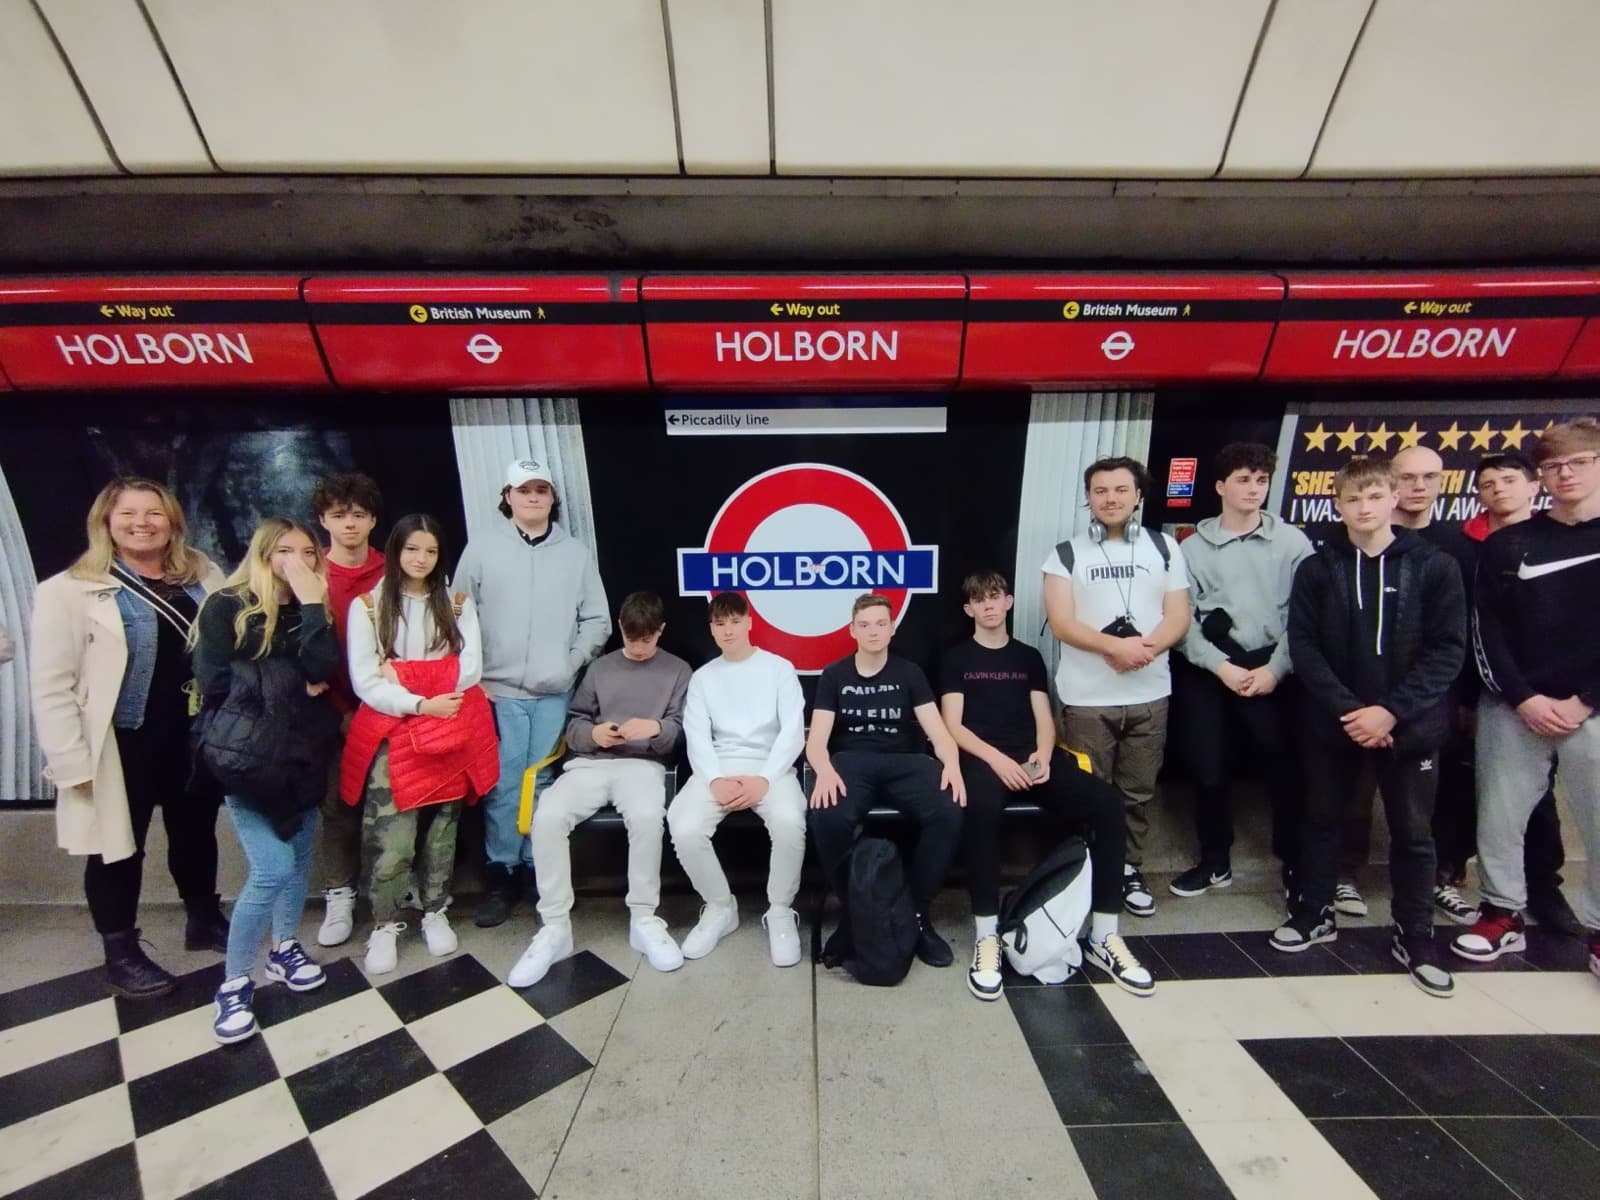 Dijaki slikani na podzemni postaji sedijo na klopi pred napisom HOLBORN